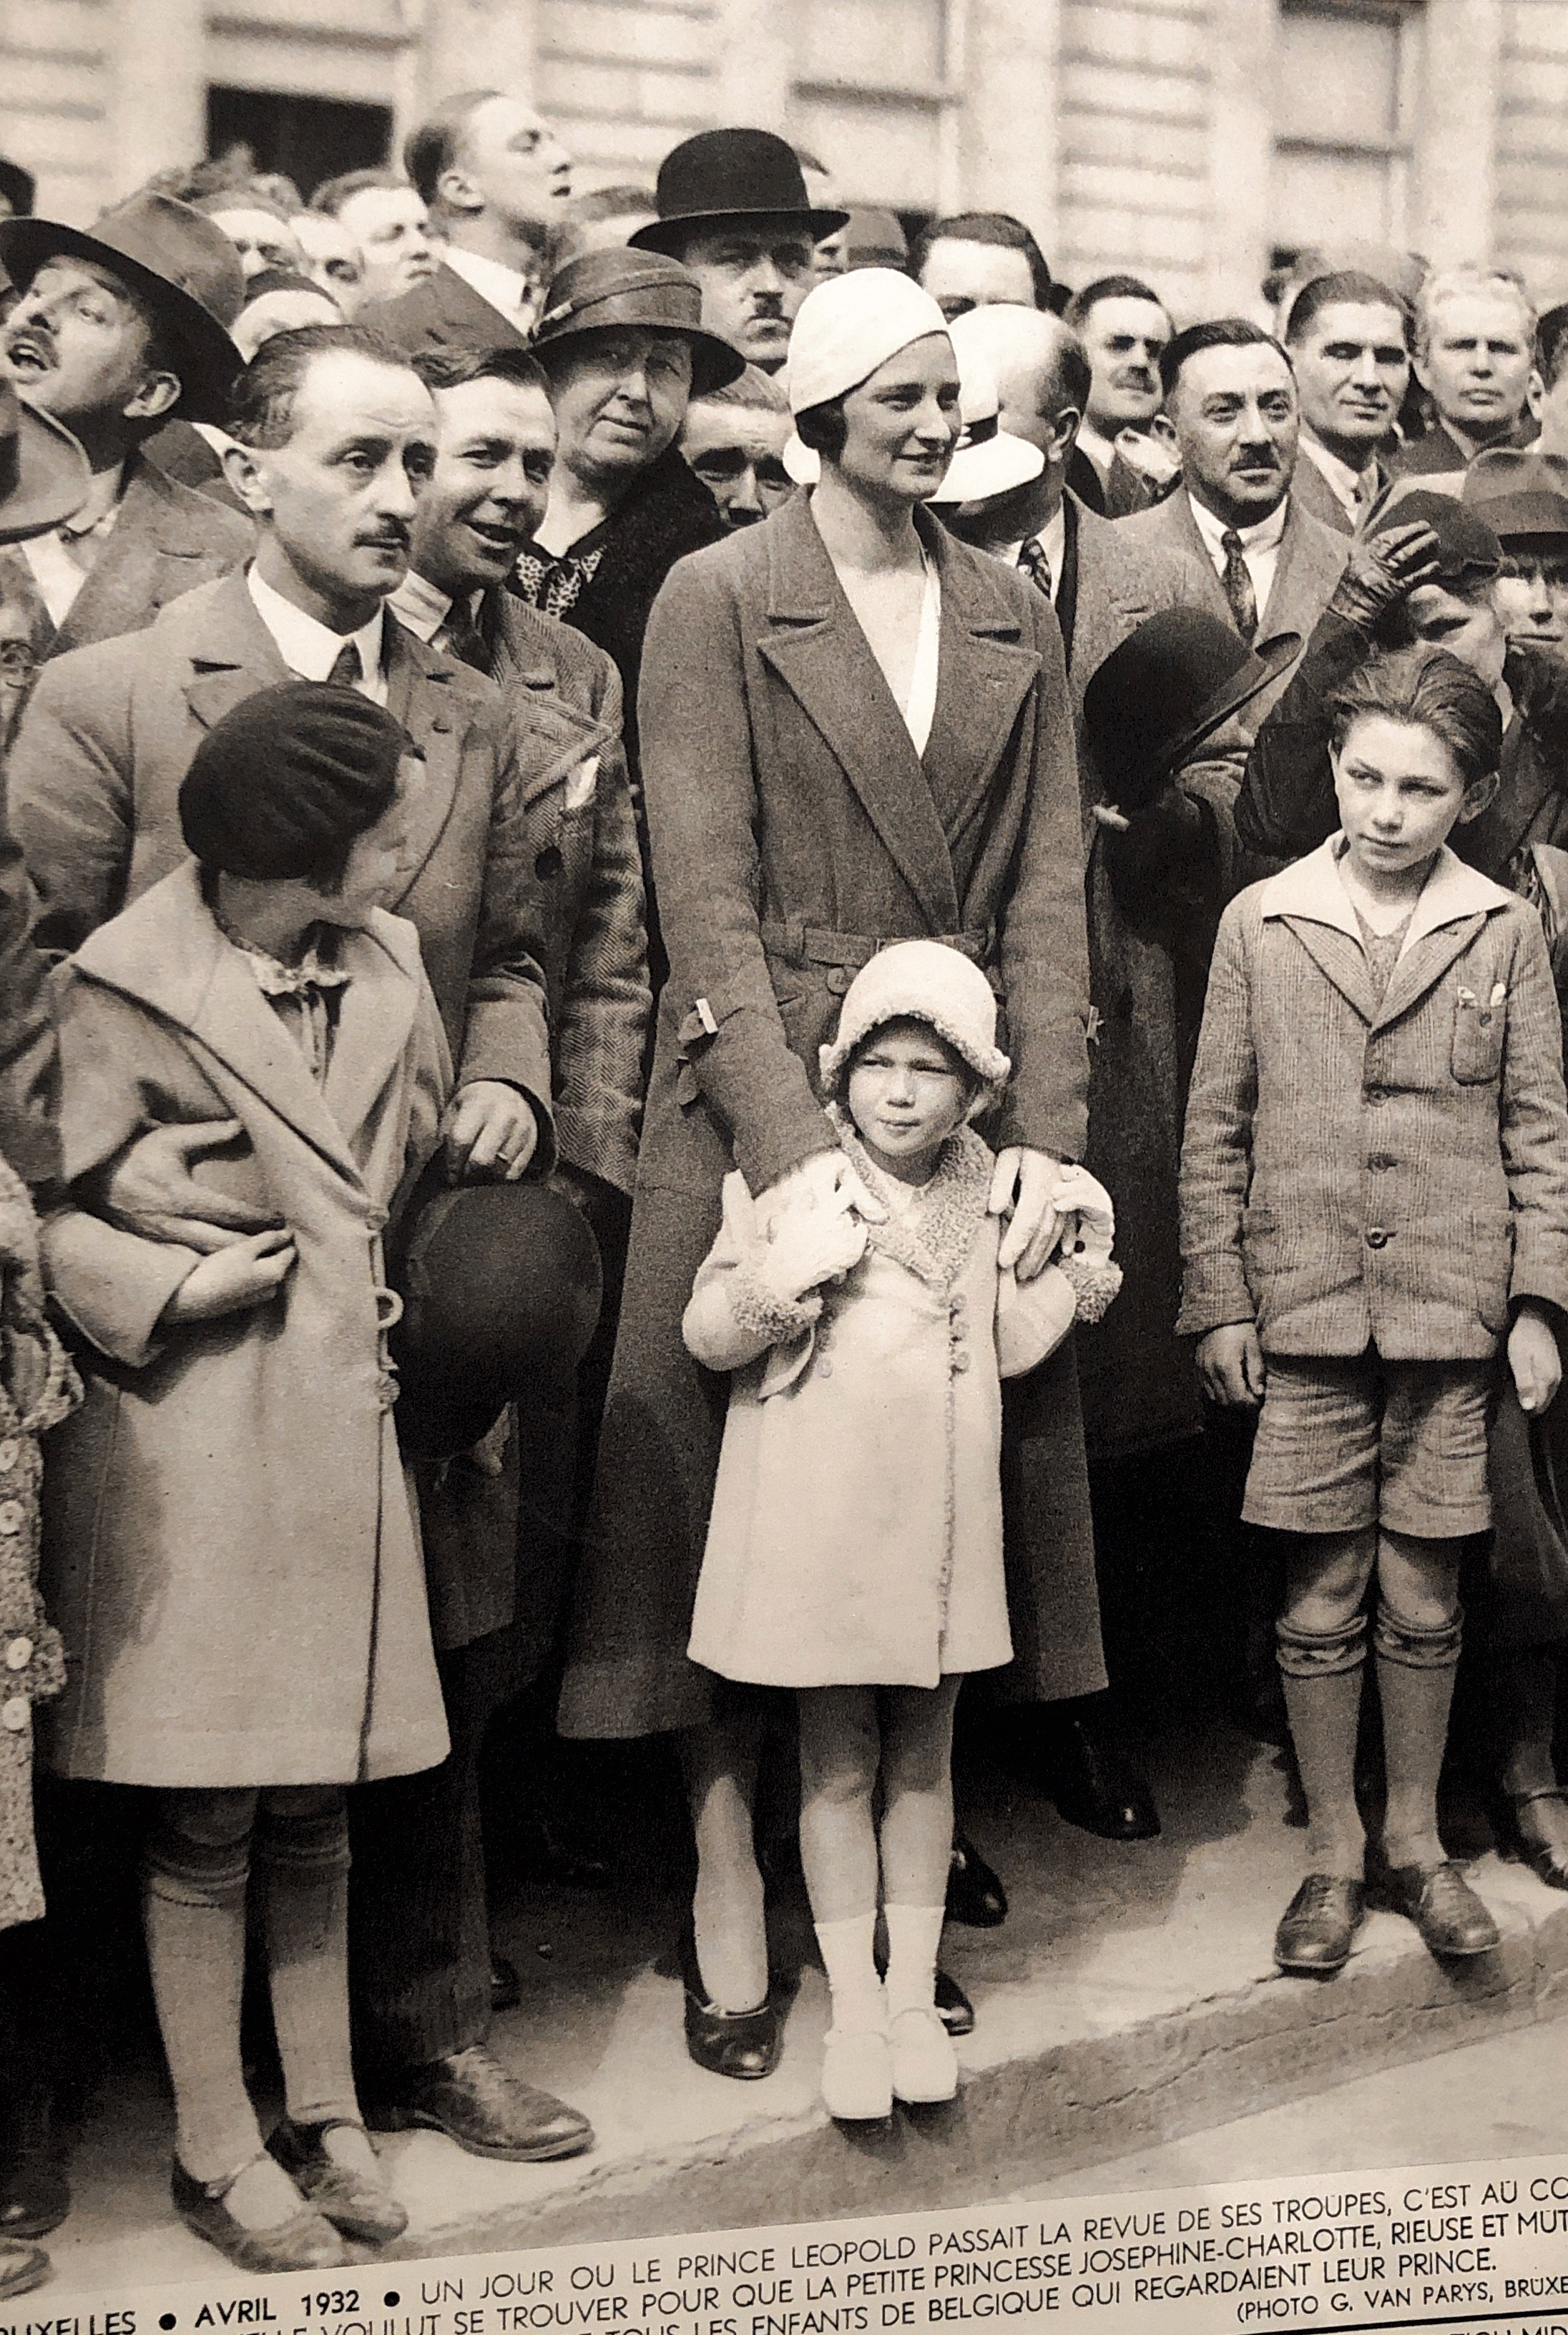 Brussel- april 1932- eens dat prins Leopold de troepen in ogenschouw nam, wilde hij zich midden het volk bevinden , opdat Josephine Charlotte, het lacherig en guitig prinsesje, haar vader kon zien, naast al de kinderen van België die hun prins aanschouwden